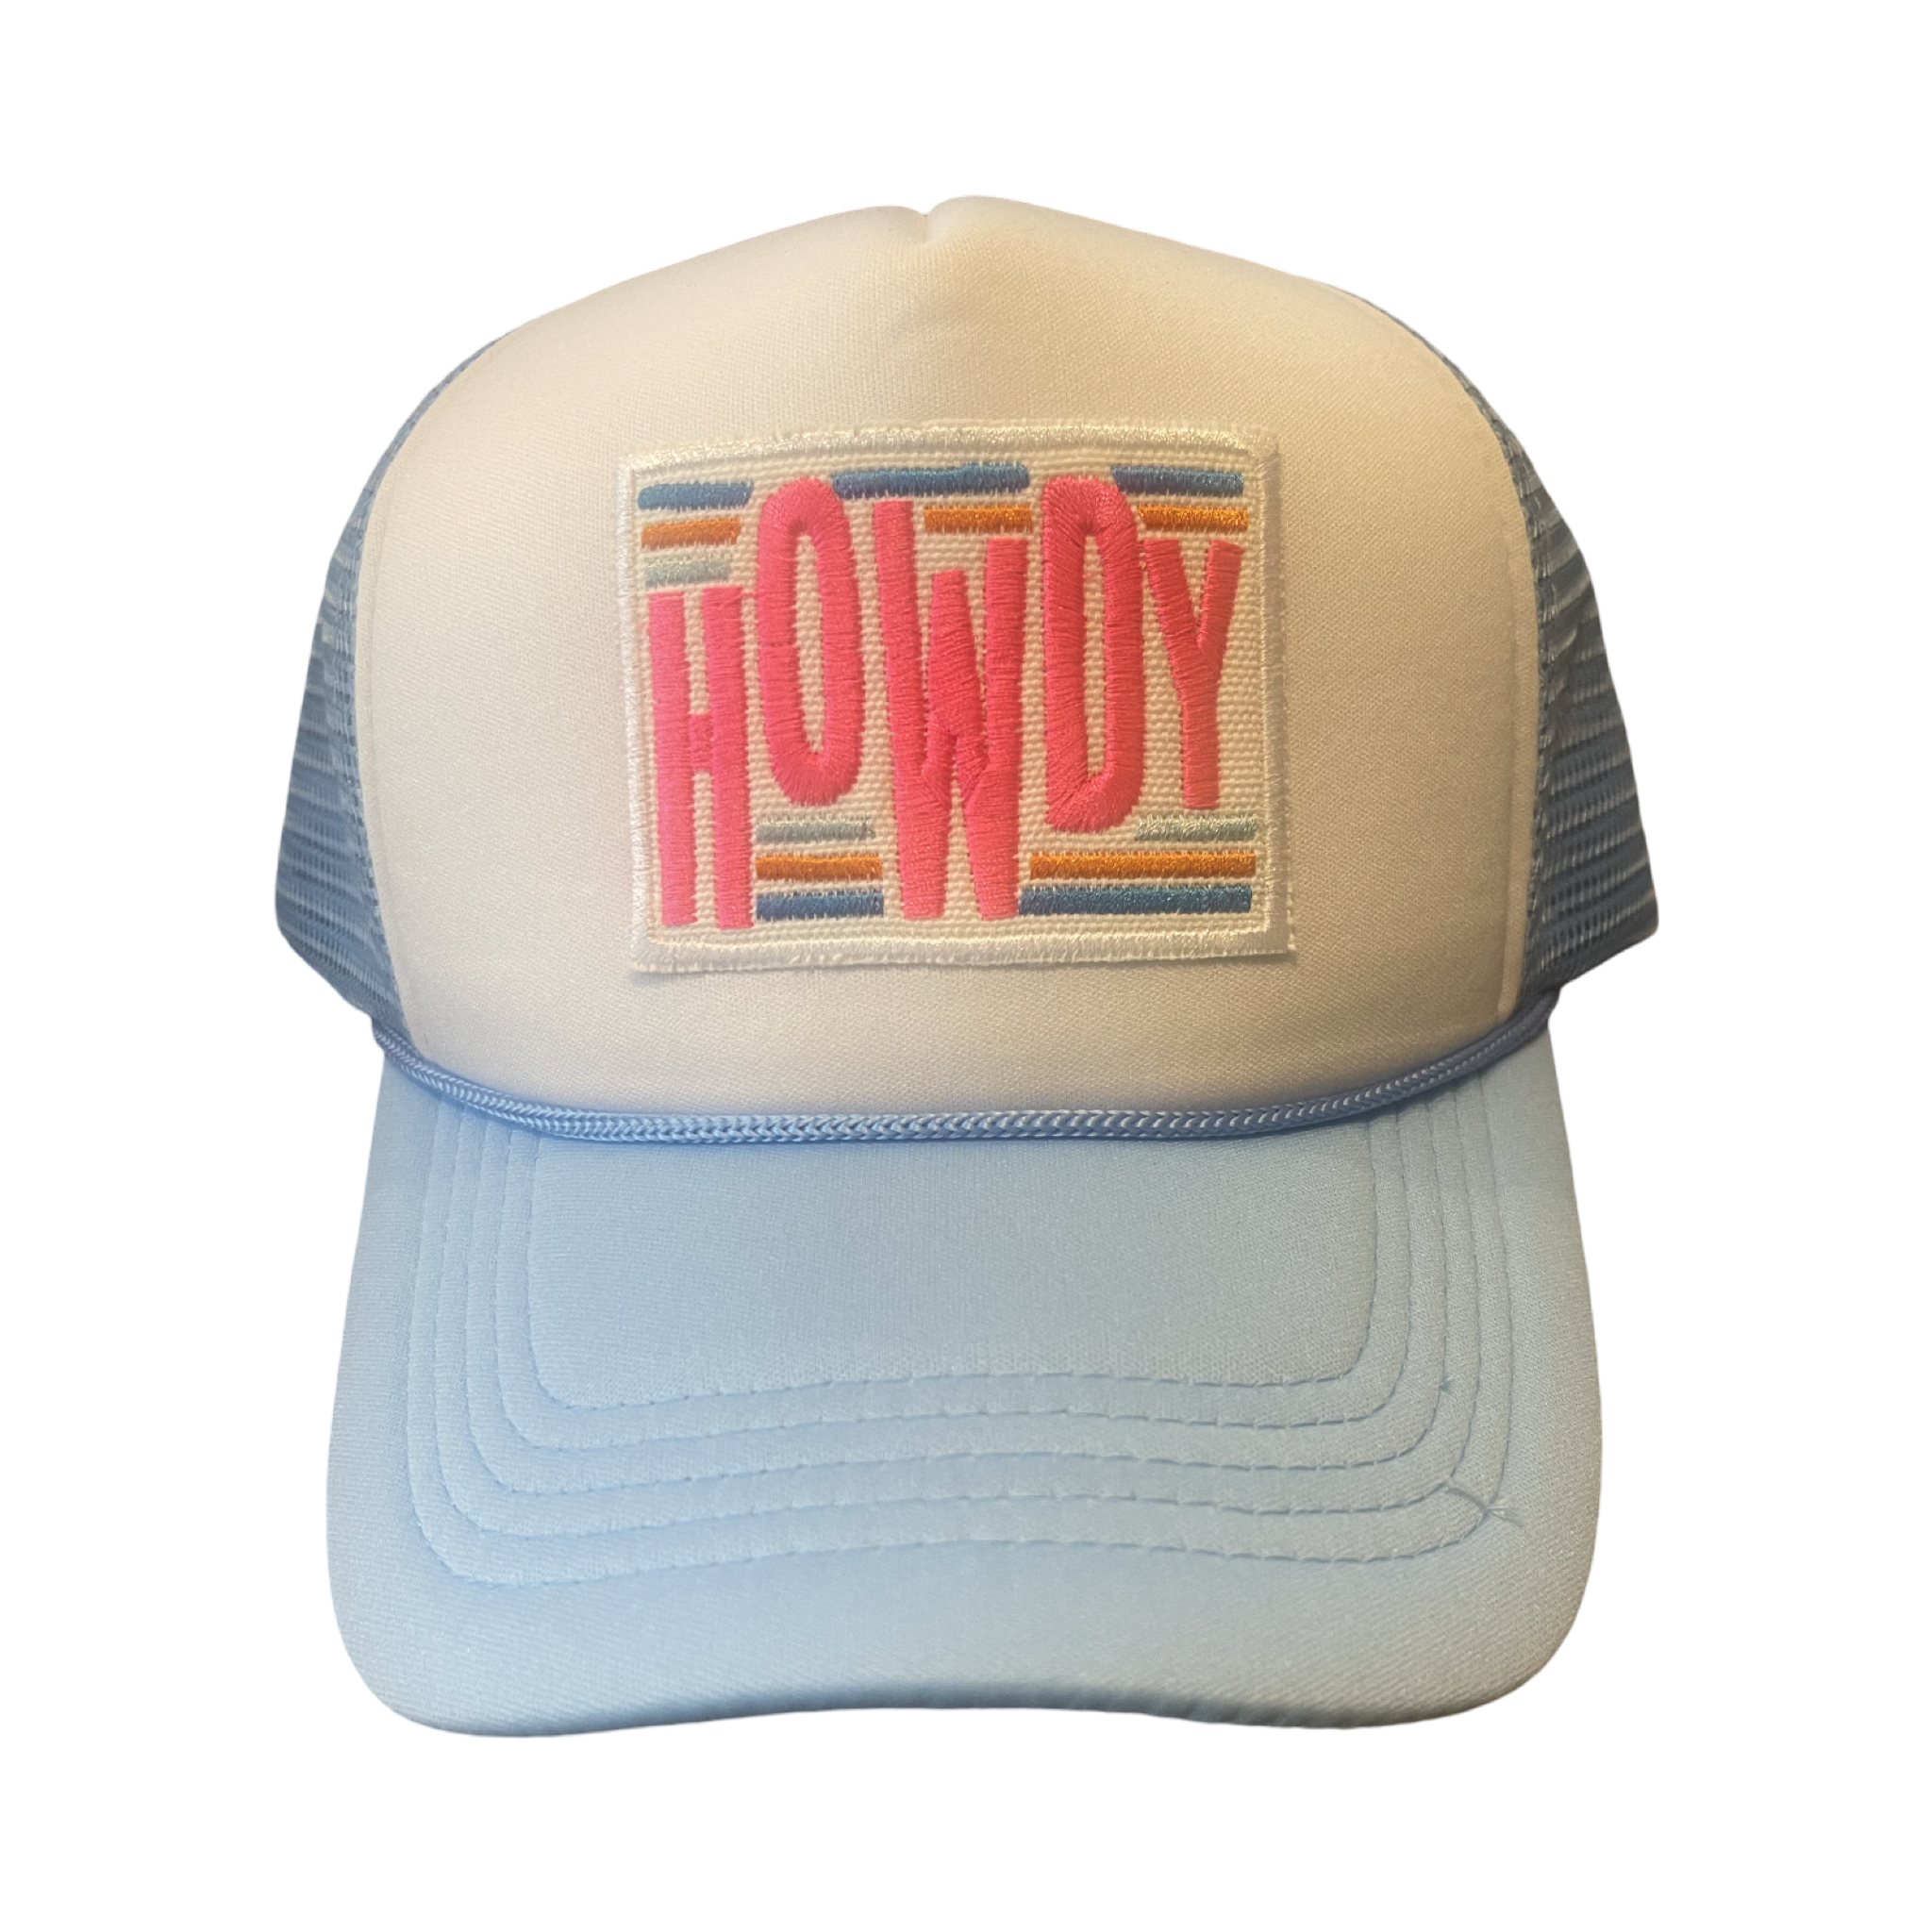 Trucker Hat Foam "Howdy"